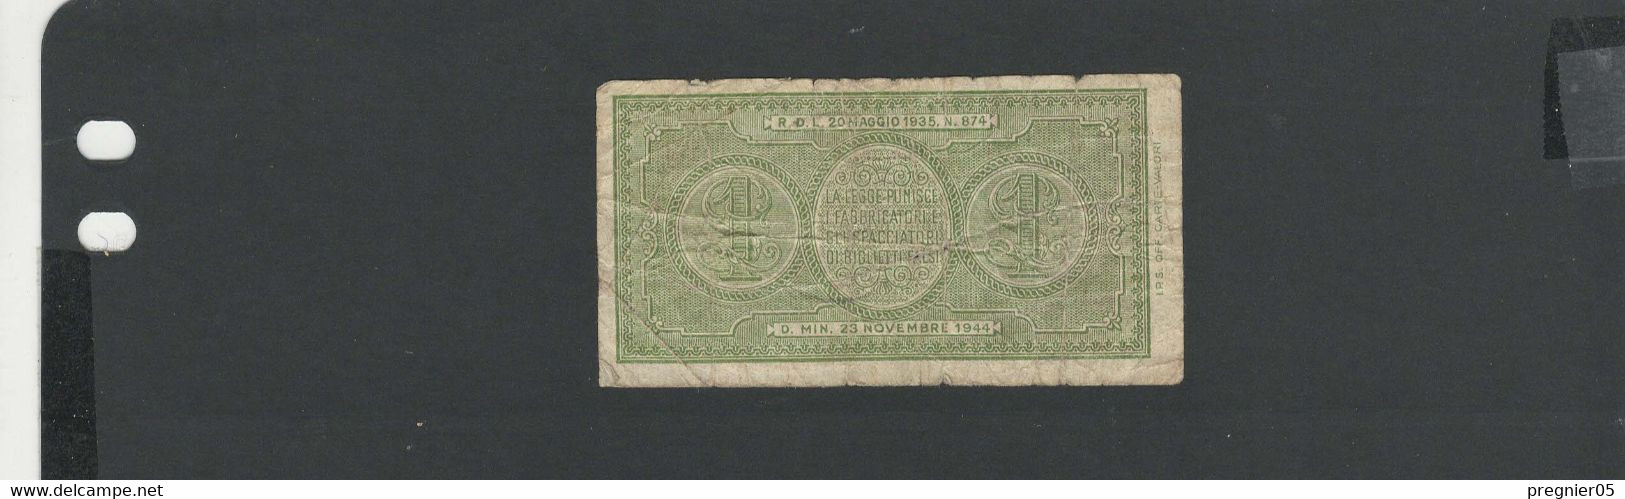 ITALIE - Billet 1 Lire 1944 B/VG Pick-029 - Italia – 1 Lira